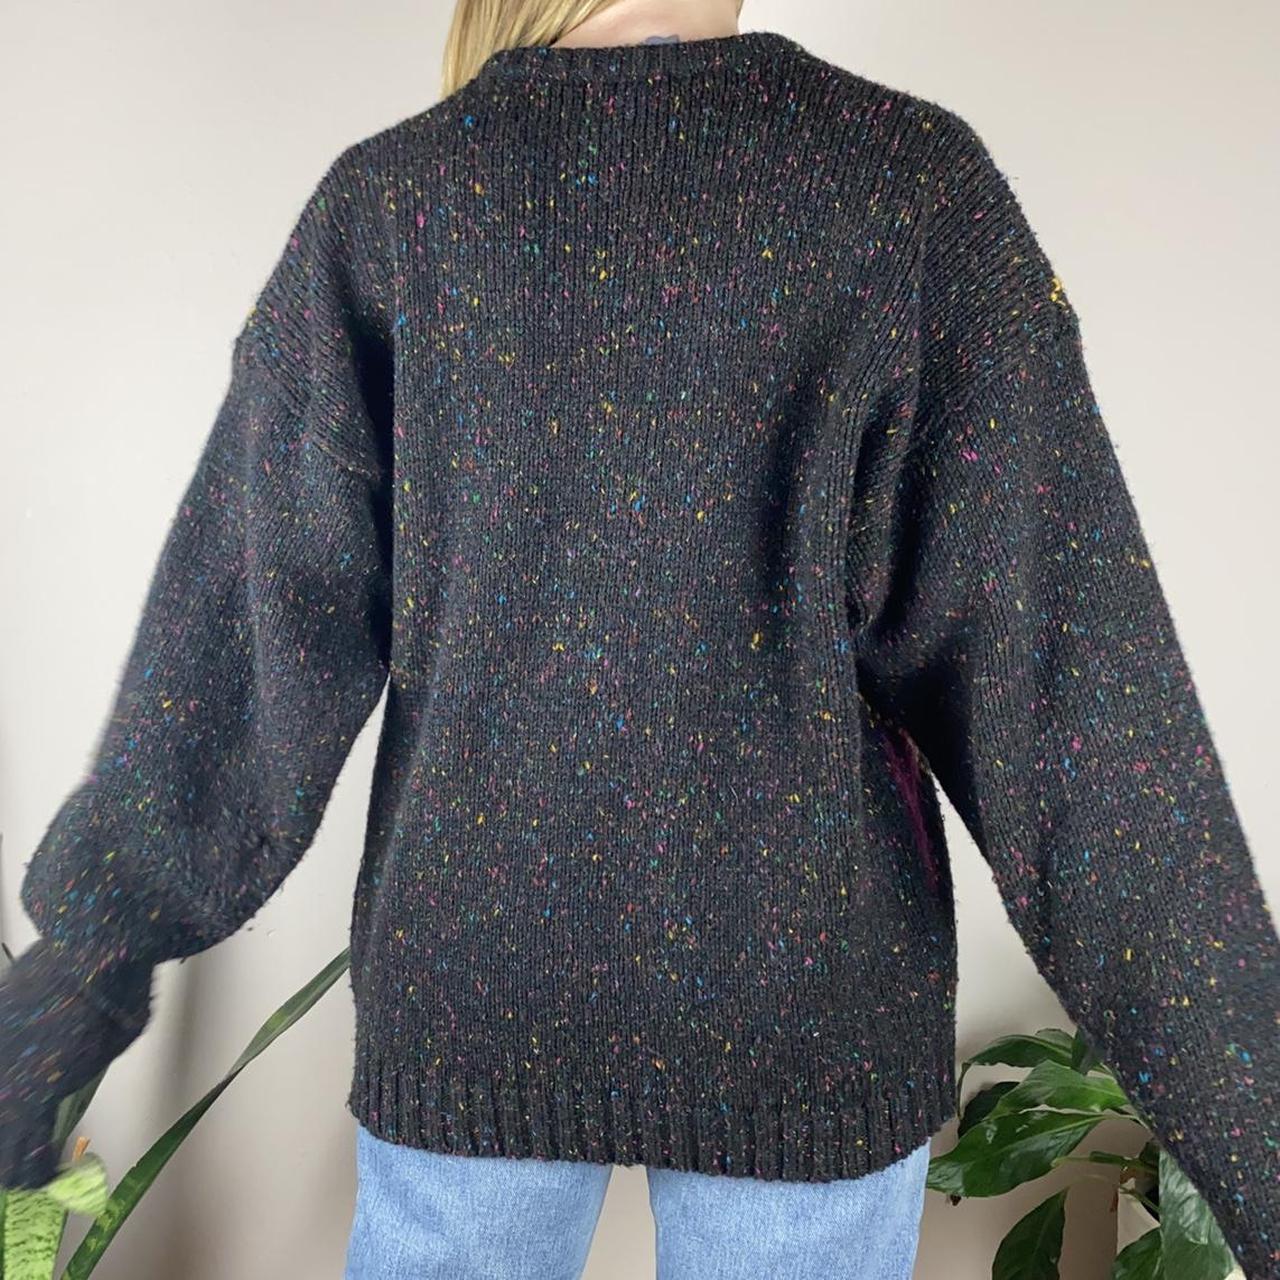 Vintage dark grey confetti sweater with argyle... - Depop